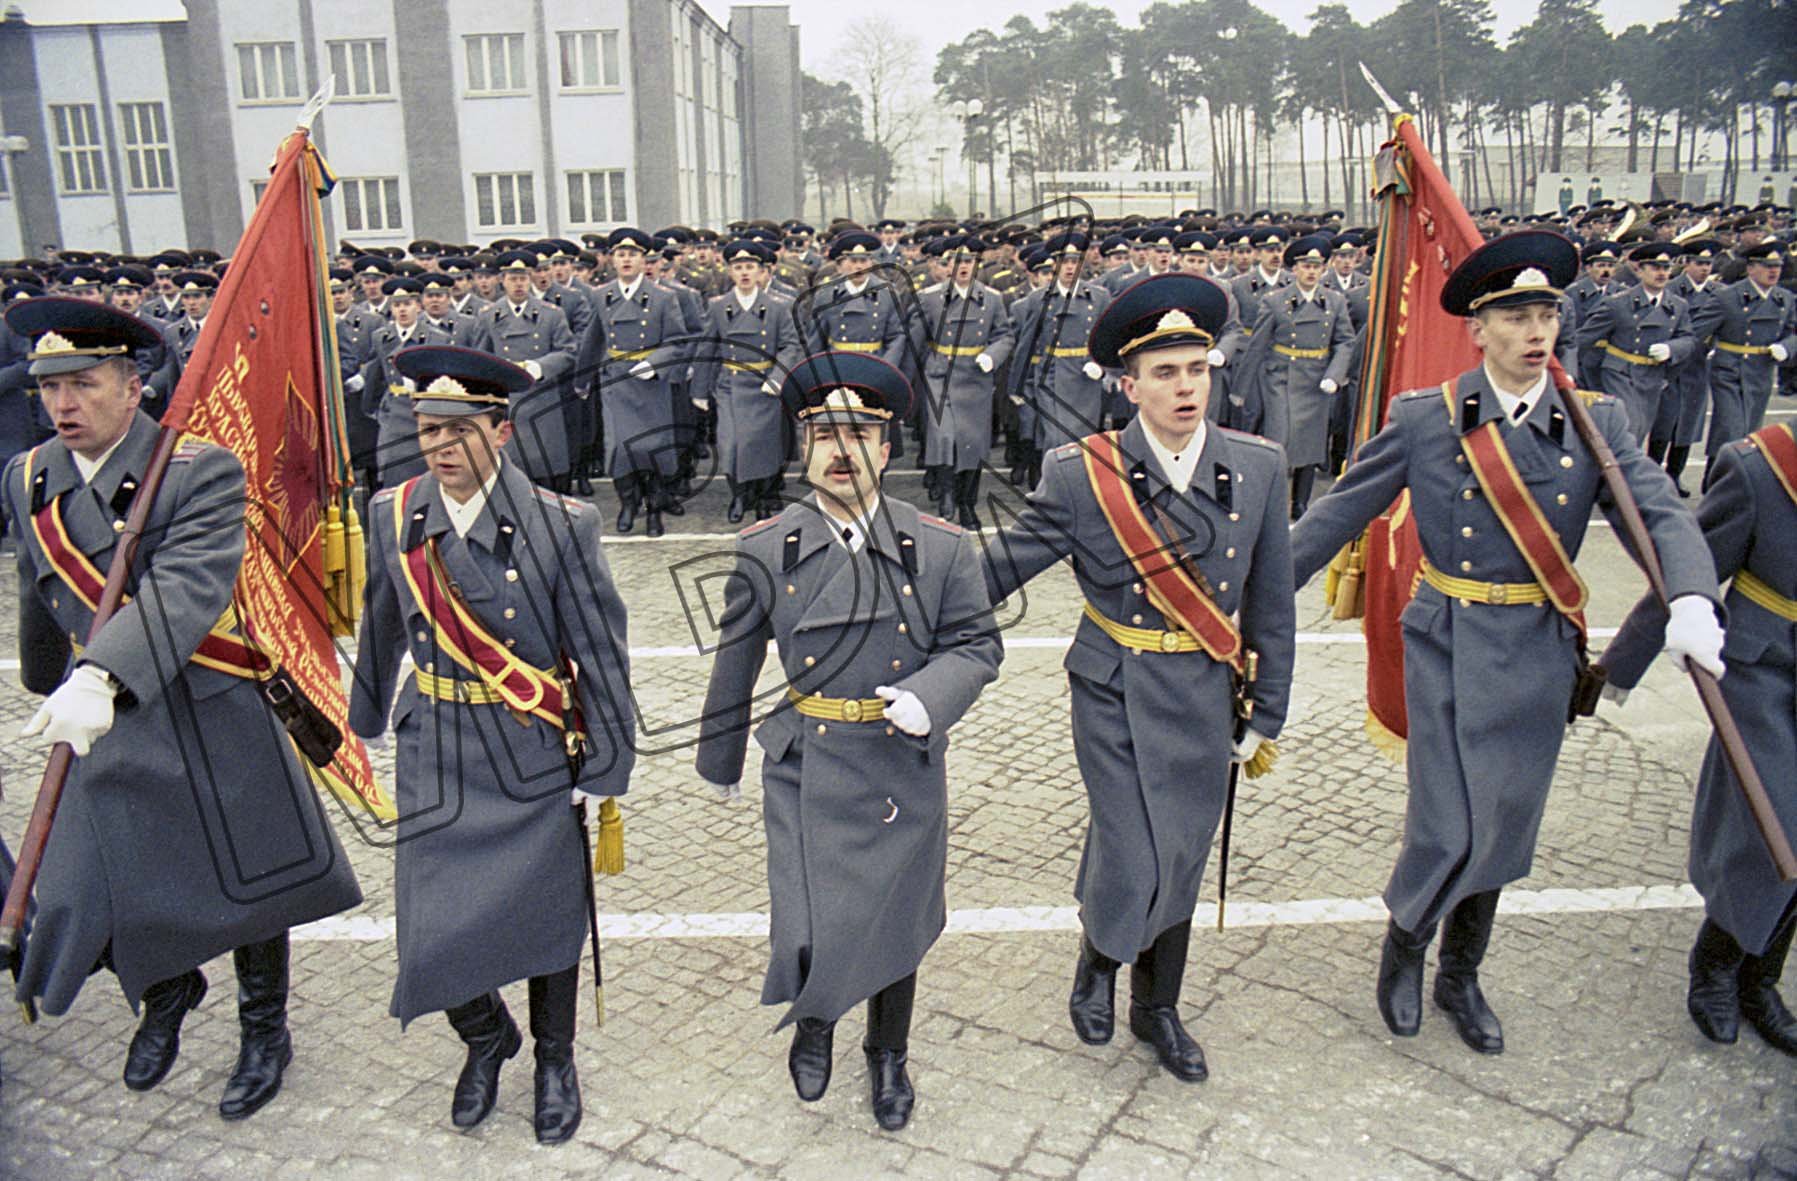 Fotografie: Parade und Feierlichkeiten zum 50. Jahrestag der Gründung der 10. Garde-Panzerdivision, Altengrabow, 26. Februar 1993 (Museum Berlin-Karlshorst RR-P)